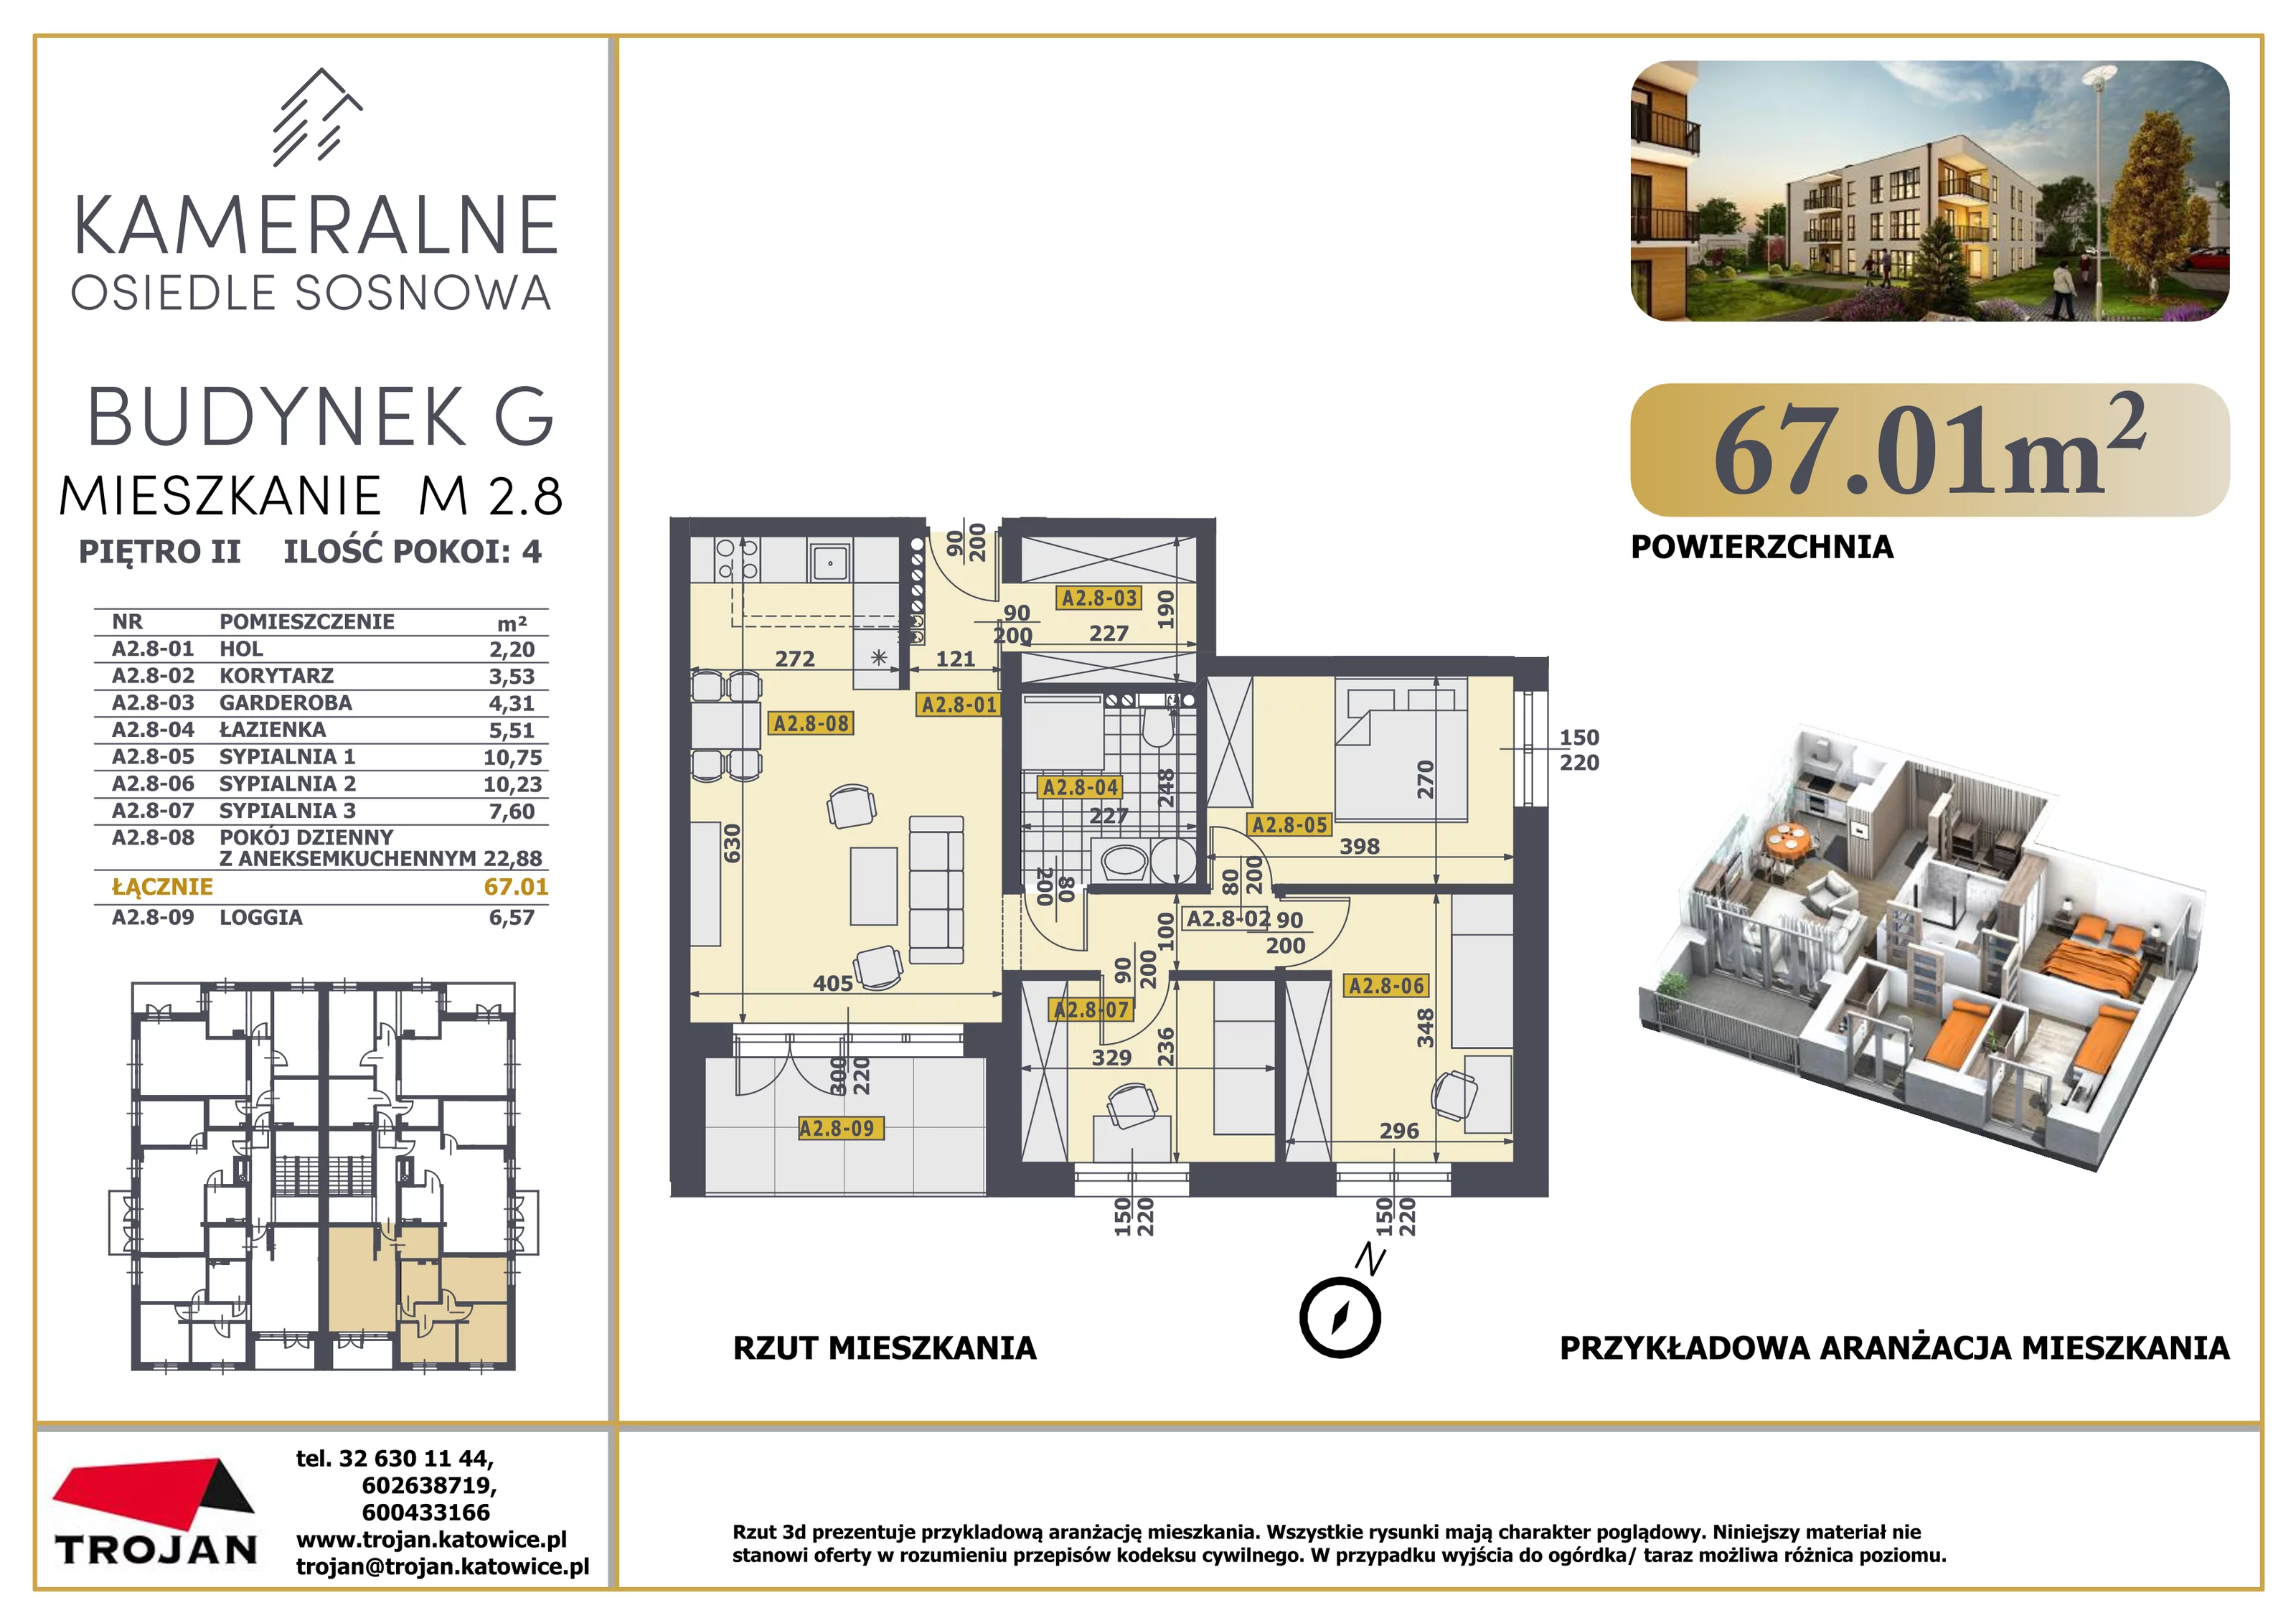 Mieszkanie 67,01 m², piętro 2, oferta nr M 2.8, Osiedle Sosnowa, Rybnik, Paruszowiec-Piaski, ul. Sosnowa 20